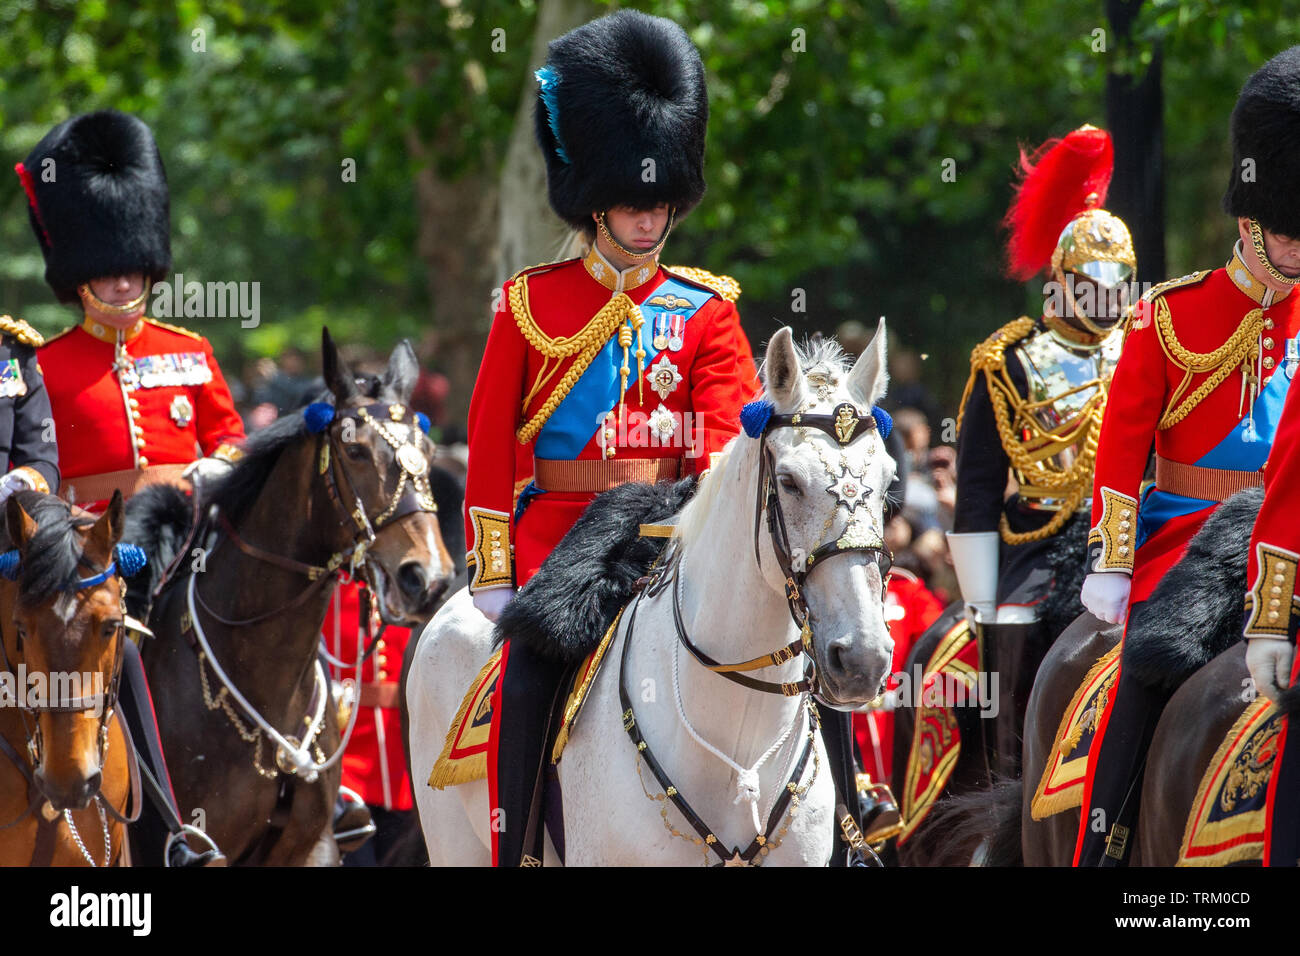 Photo datée du 8 juin montre le Prince William à la parade la couleur à Londres aujourd'hui. L'anniversaire officiel de la Reine a été marquée avec la parade annuelle de la parade de couleur. Elle a été rejoint par des membres de sa famille et des milliers de spectateurs à regarder l'écran en Horse Guards Parade dans Whitehall. Le Prince de Galles, la duchesse de Cornwall, le duc et la duchesse de Cambridge et le duc et la duchesse de Sussex est allé(e) à tous. La reine a célébré son 93e anniversaire en avril. Les colonels royale - le Prince de Galles, le colonel de la Garde galloise, la Princesse Royale, le colonel du Blues un Banque D'Images